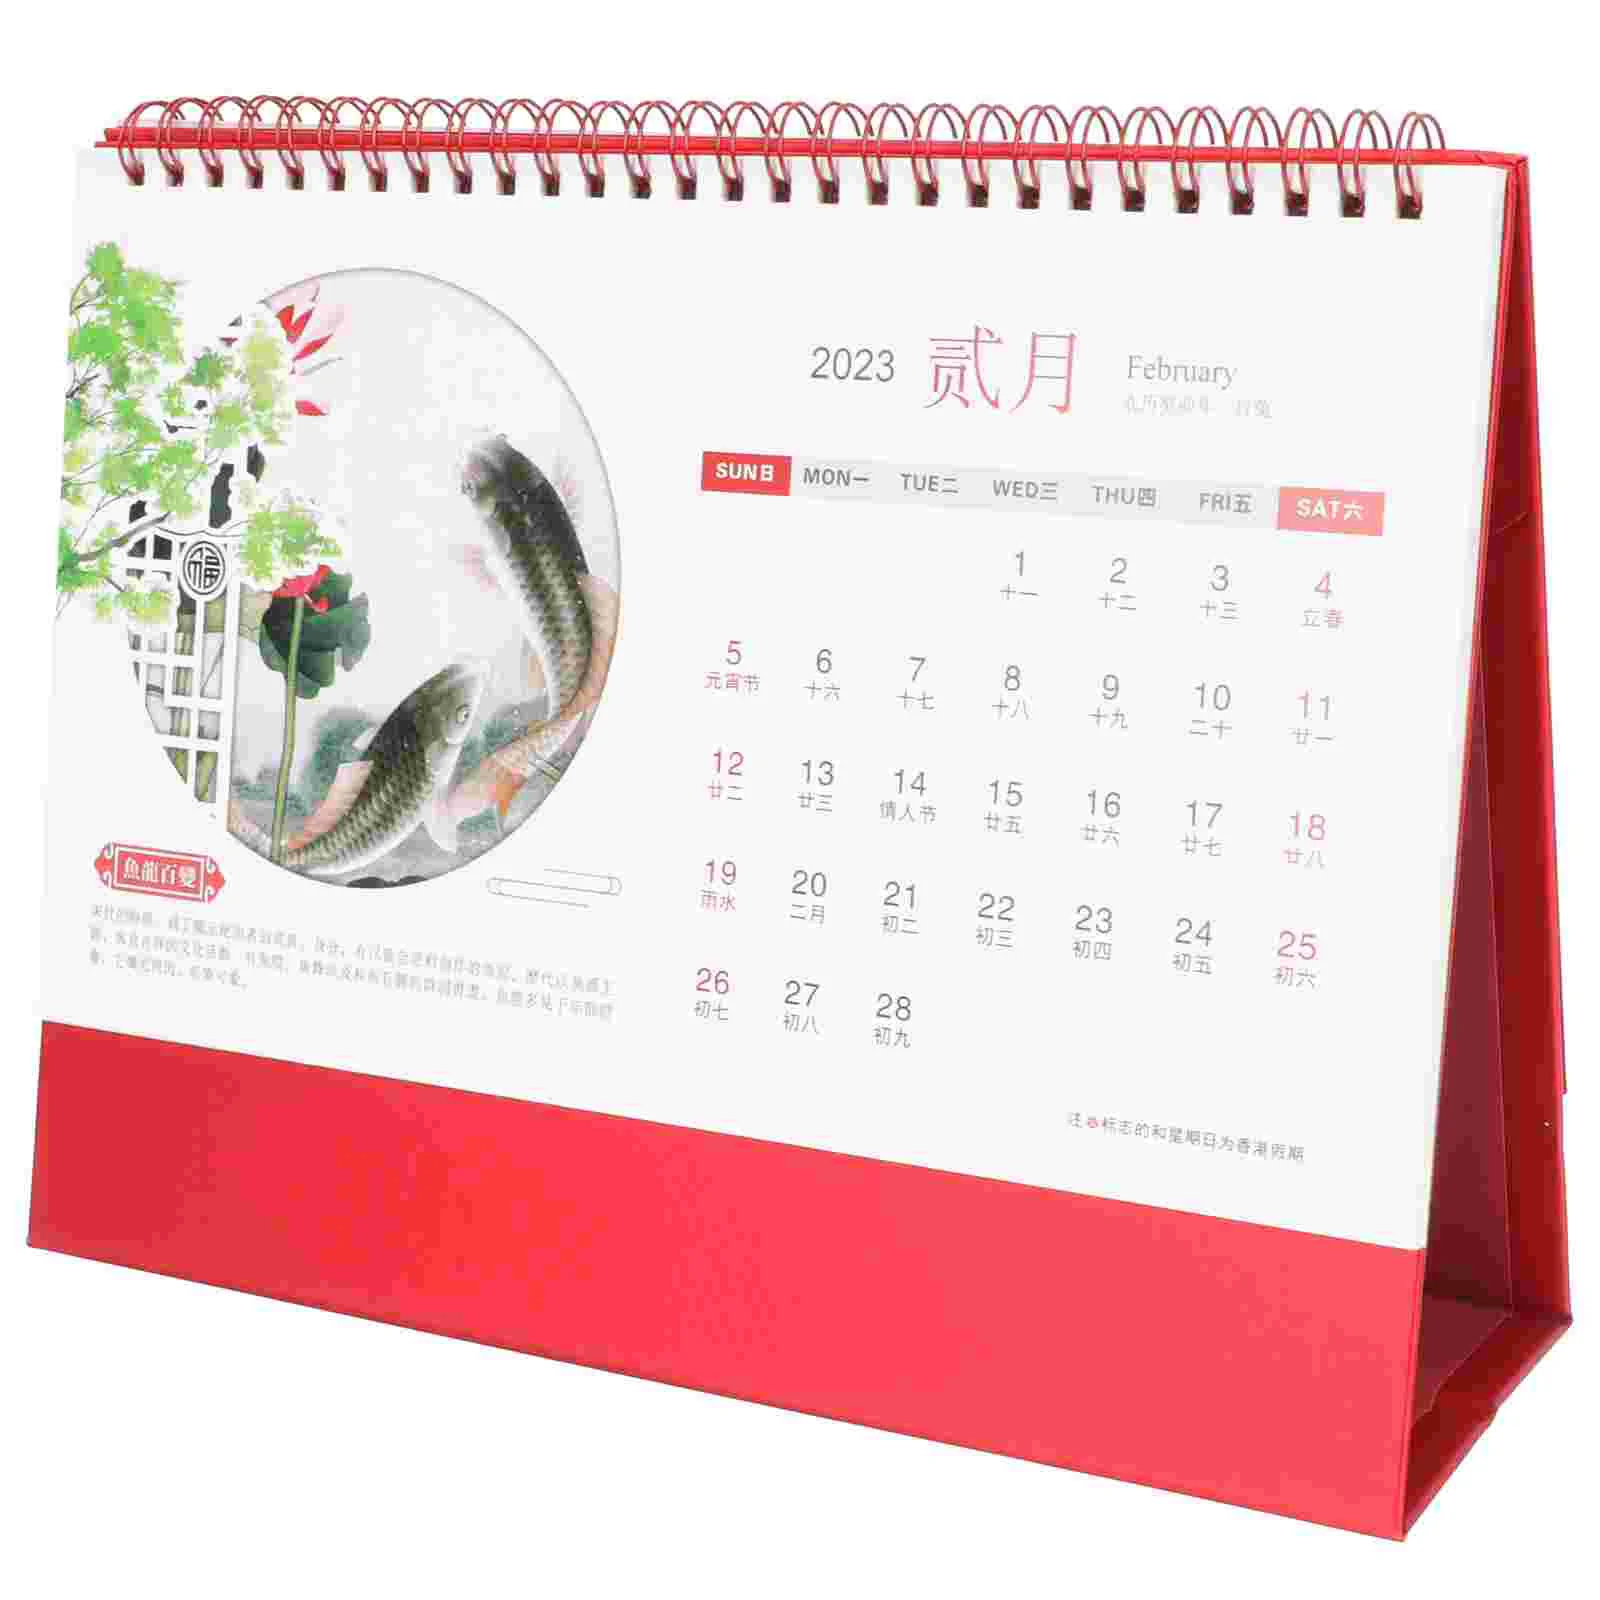 

Календарь, настольные календари 2023, планер, стенд, блокировка, расписание, декоративное ежемесячное китайское домашнее время